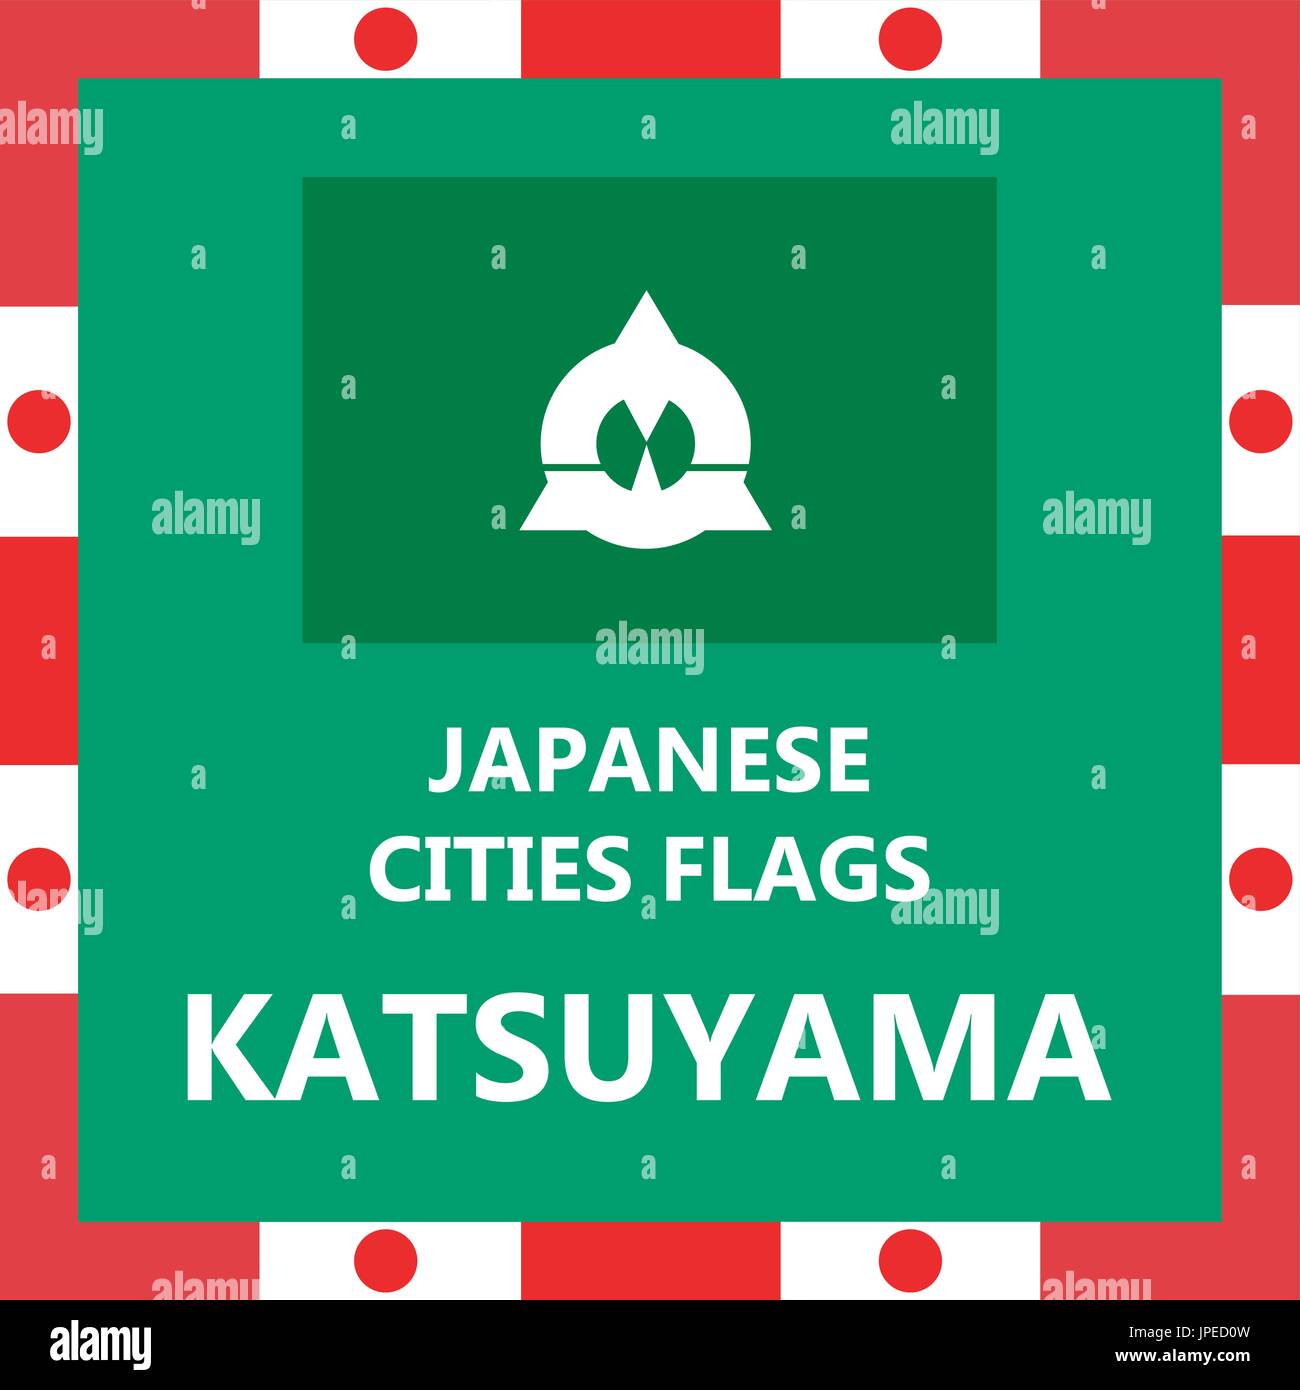 Pavillon de ville japonaise Katsuyama Illustration de Vecteur